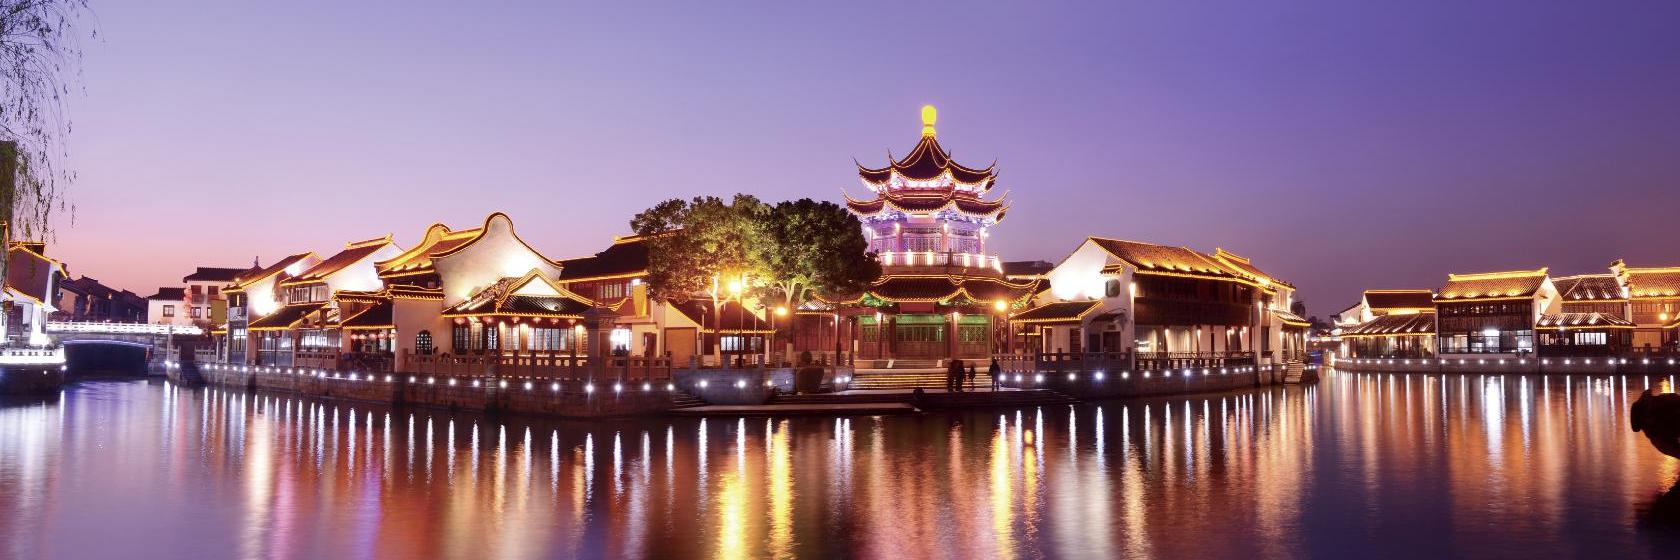 أفضل 10 فنادق في سوتشو، الصين | Booking.com